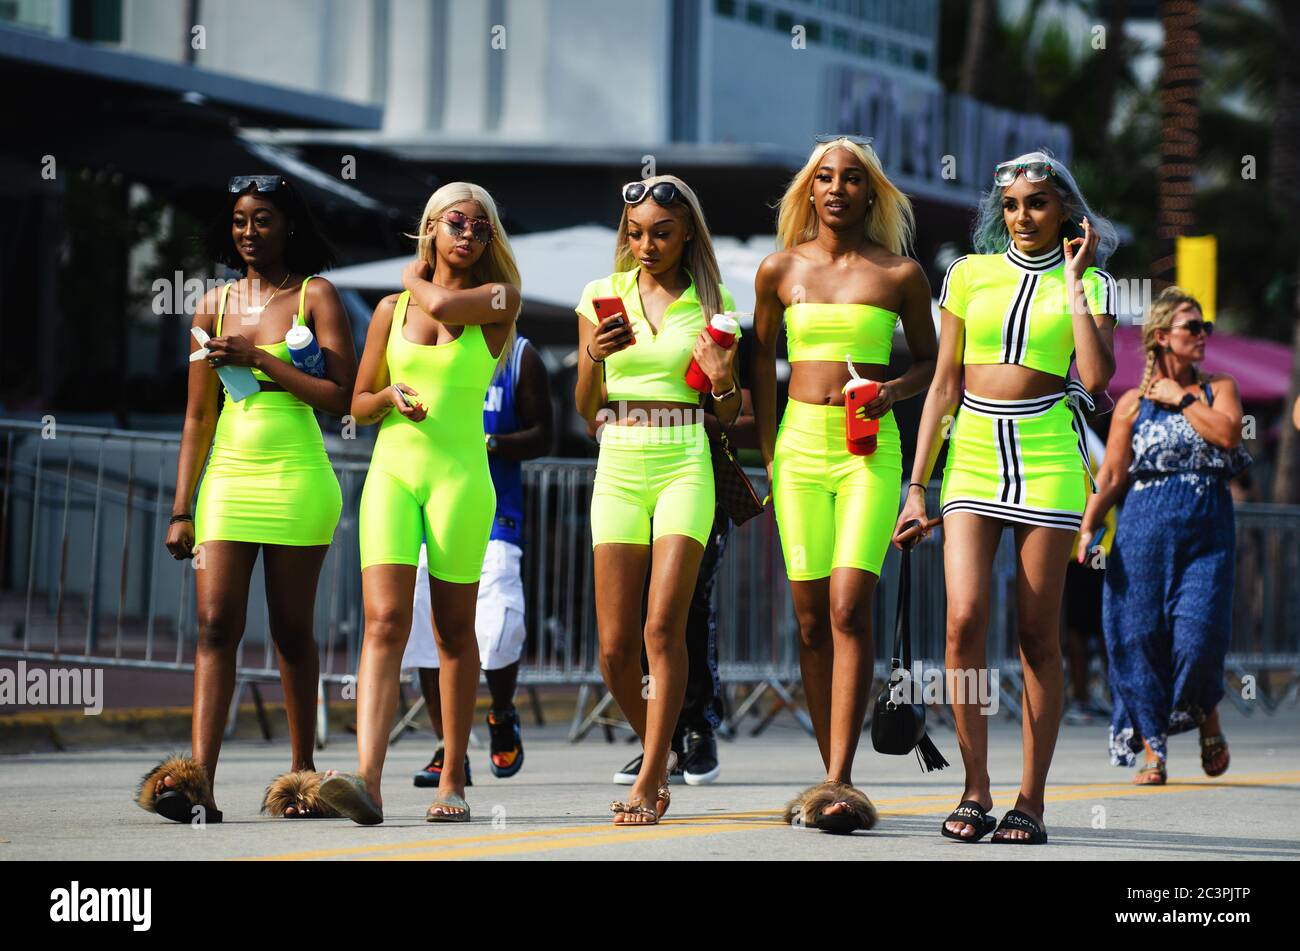 MIAMI - 17. MÄRZ 2019: Eine Gruppe junger Frauen in knallbunten, passenden neongrünen Outfits geht in den Frühlingsferien auf dem Ocean Drive in South Beach spazieren. Stockfoto